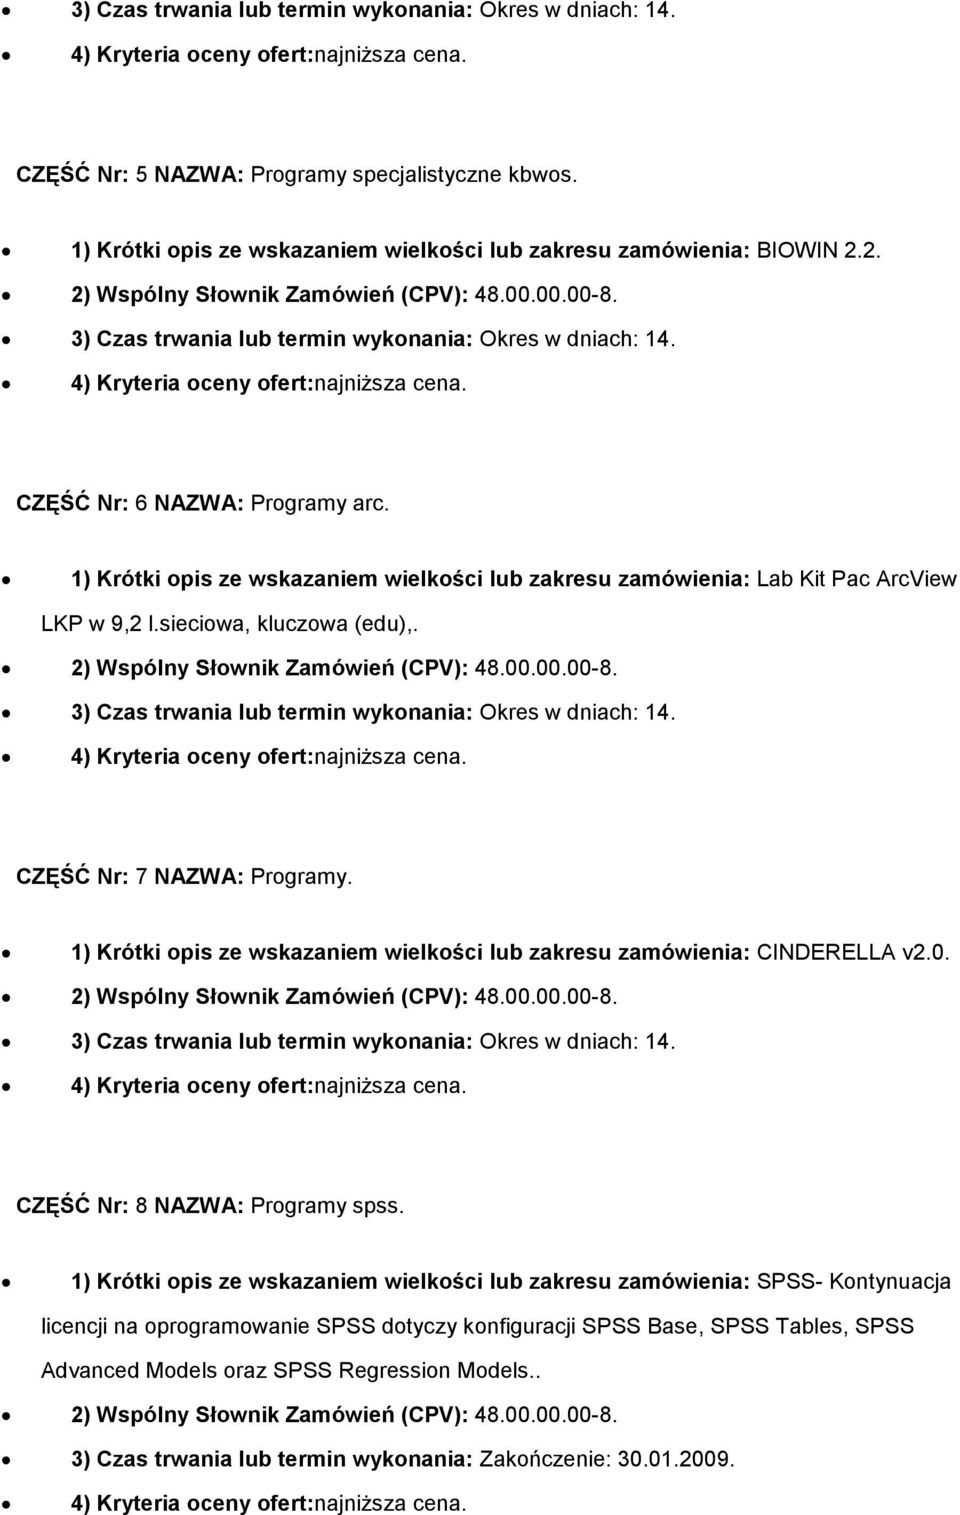 1) Krótki opis ze wskazaniem wielkości lub zakresu zamówienia: CINDERELLA v2.0. CZĘŚĆ Nr: 8 NAZWA: Programy spss.